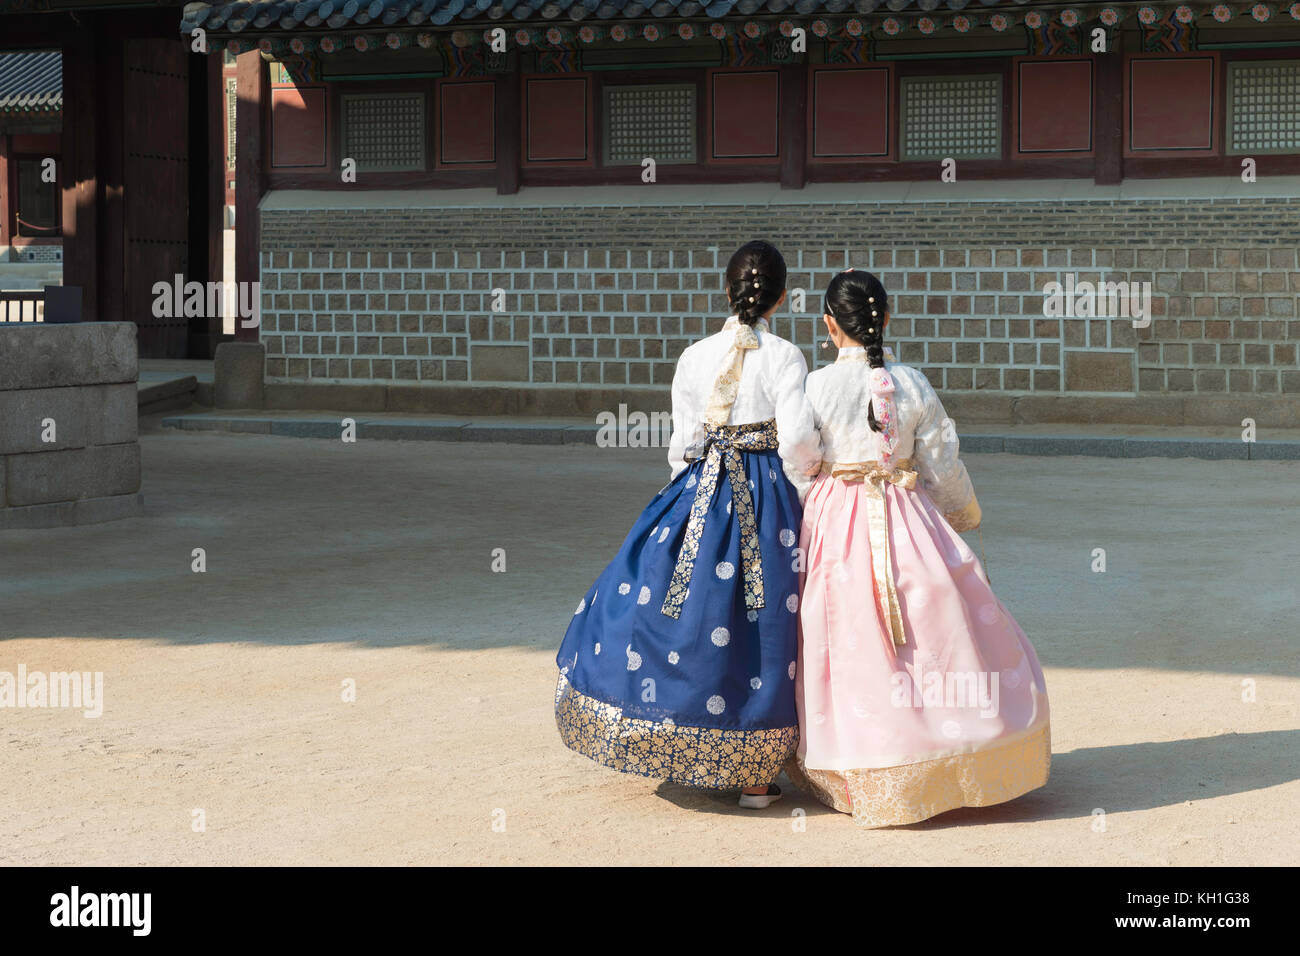 Asiatische koreanische Frau gekleidet hanbok in traditioneller Kleidung  wandern in Gyeongbokgung Palast in Seoul, Südkorea Stockfotografie - Alamy